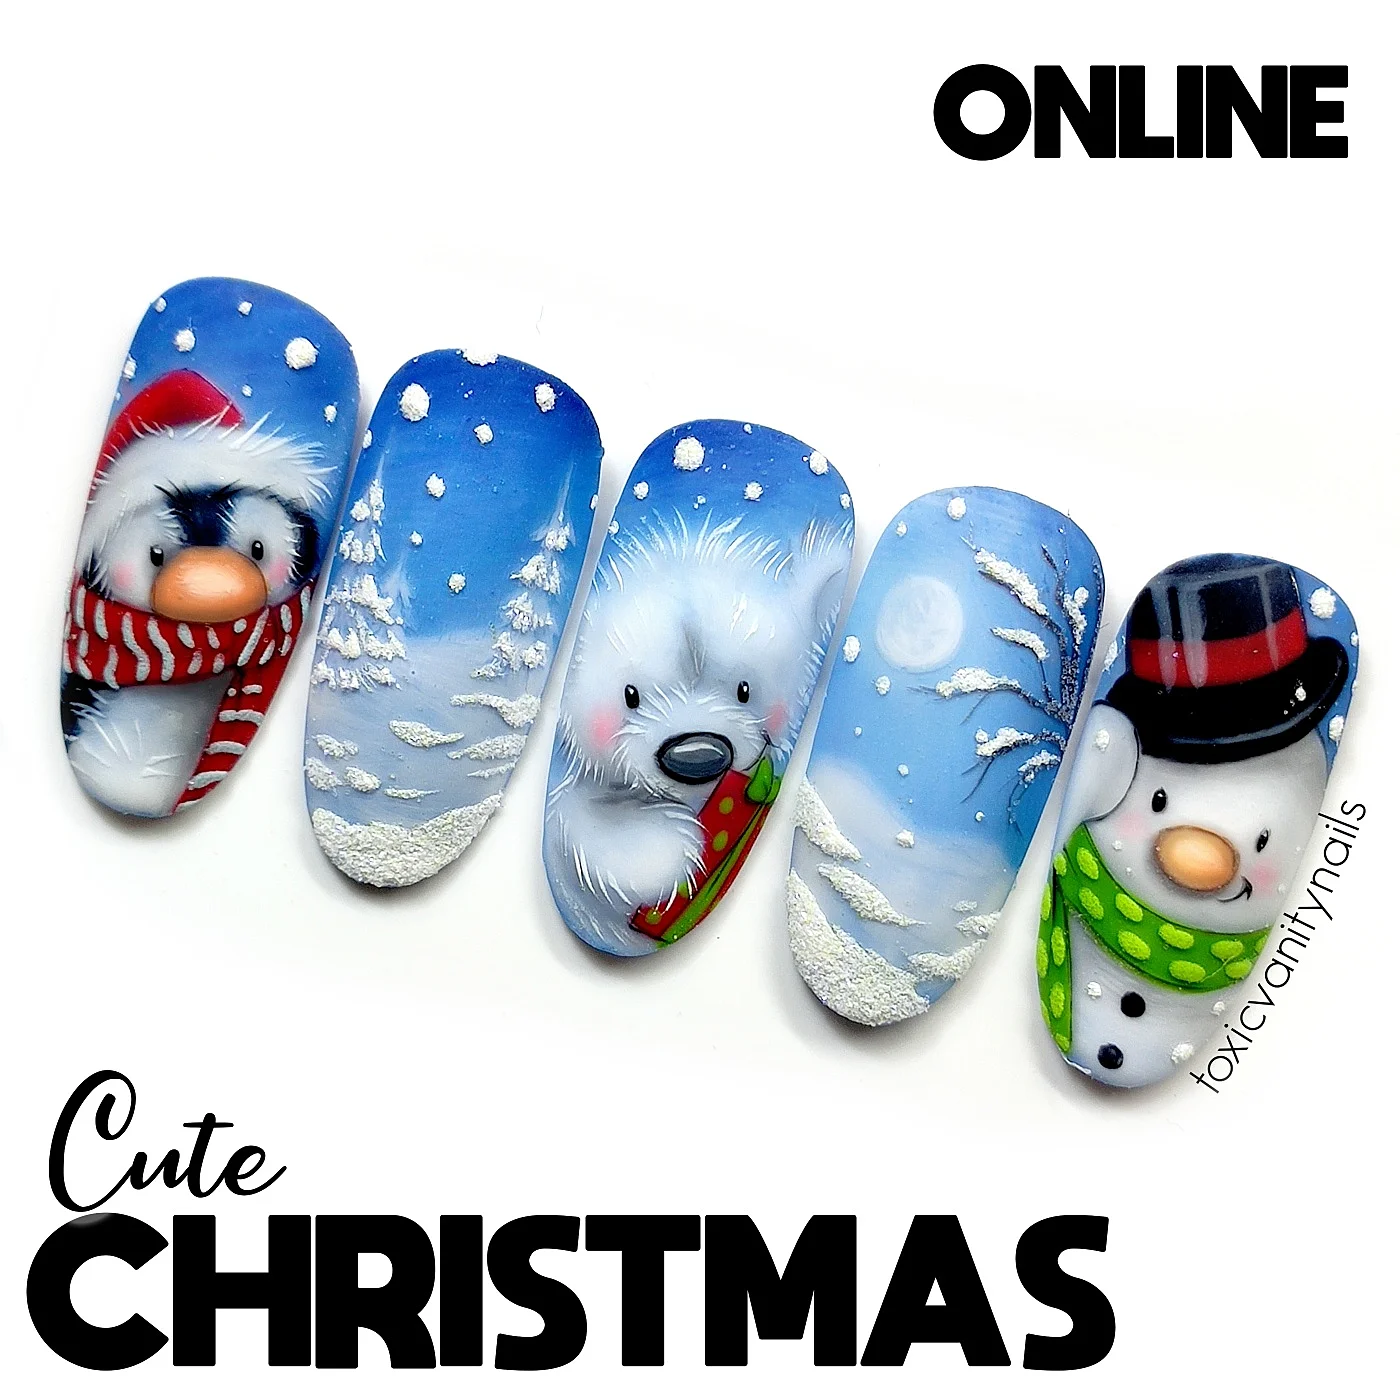 Curso Online Cute Christmas 2